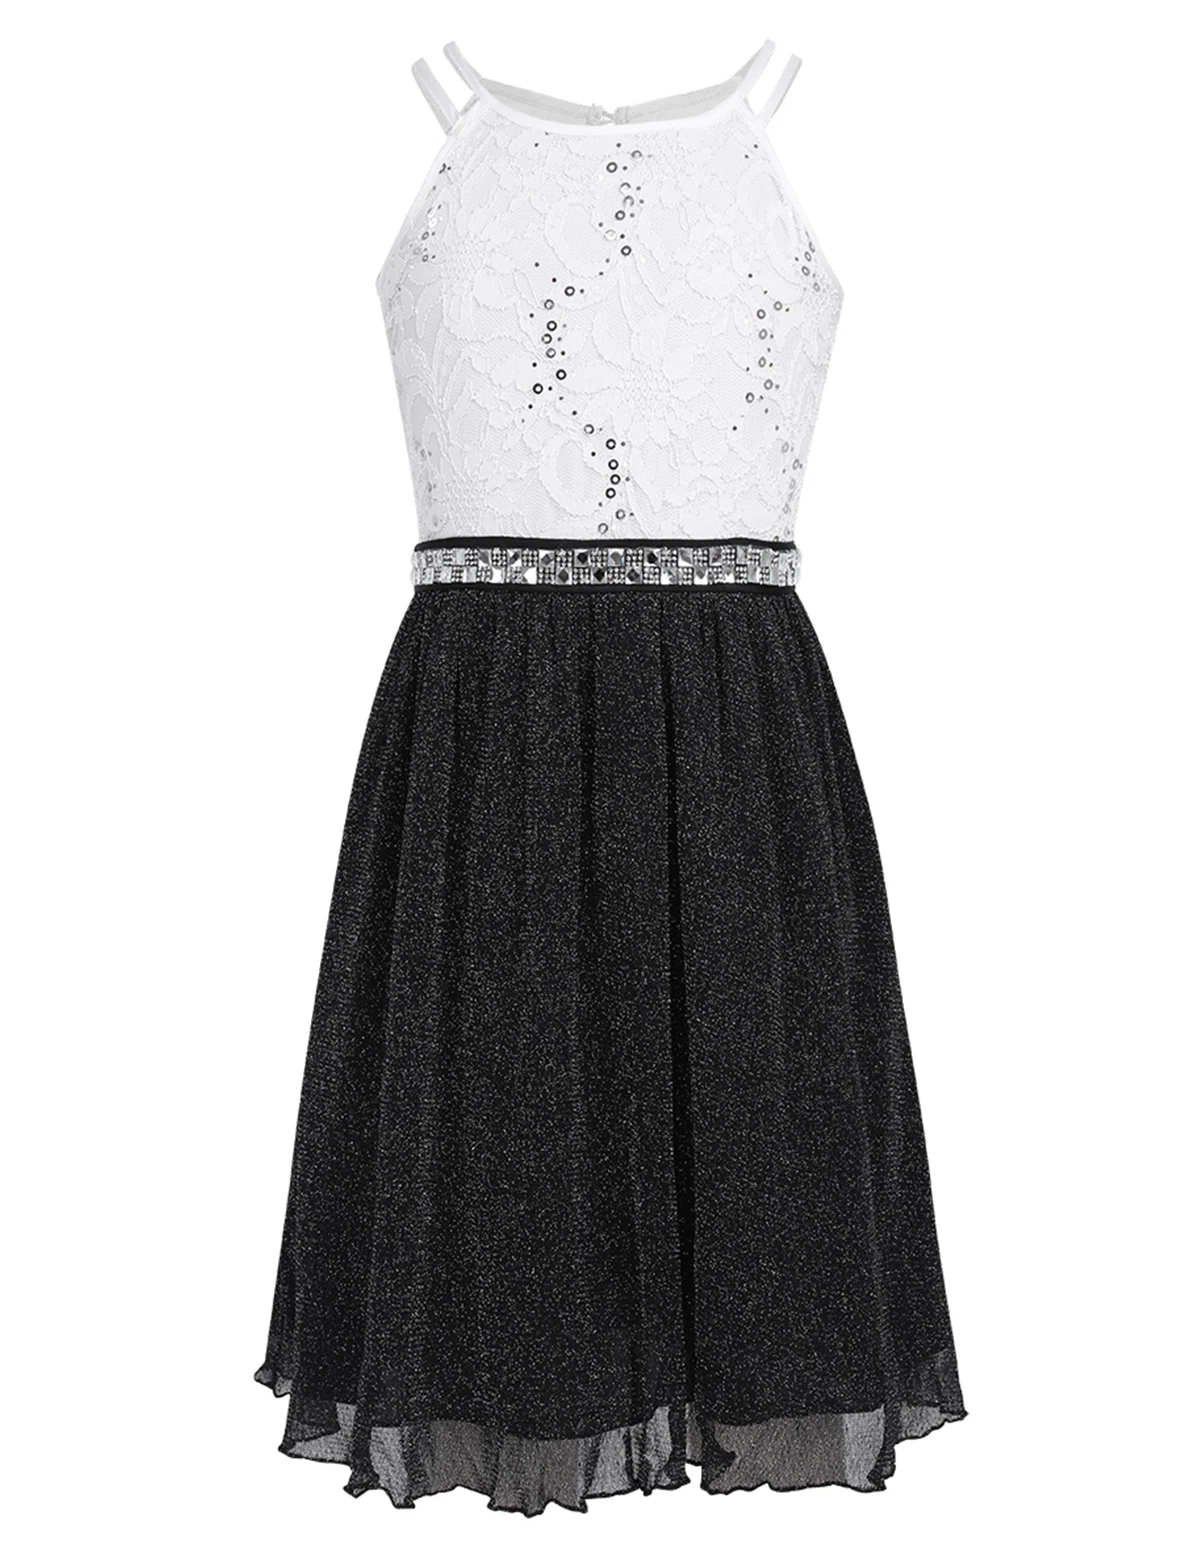 Petites Filles халаты платья принцессы с кружевными цветами для Девочек Пышные Платья из тюля для девочек платья для первого причастия для торжественных вечеринок - Цвет: Black White